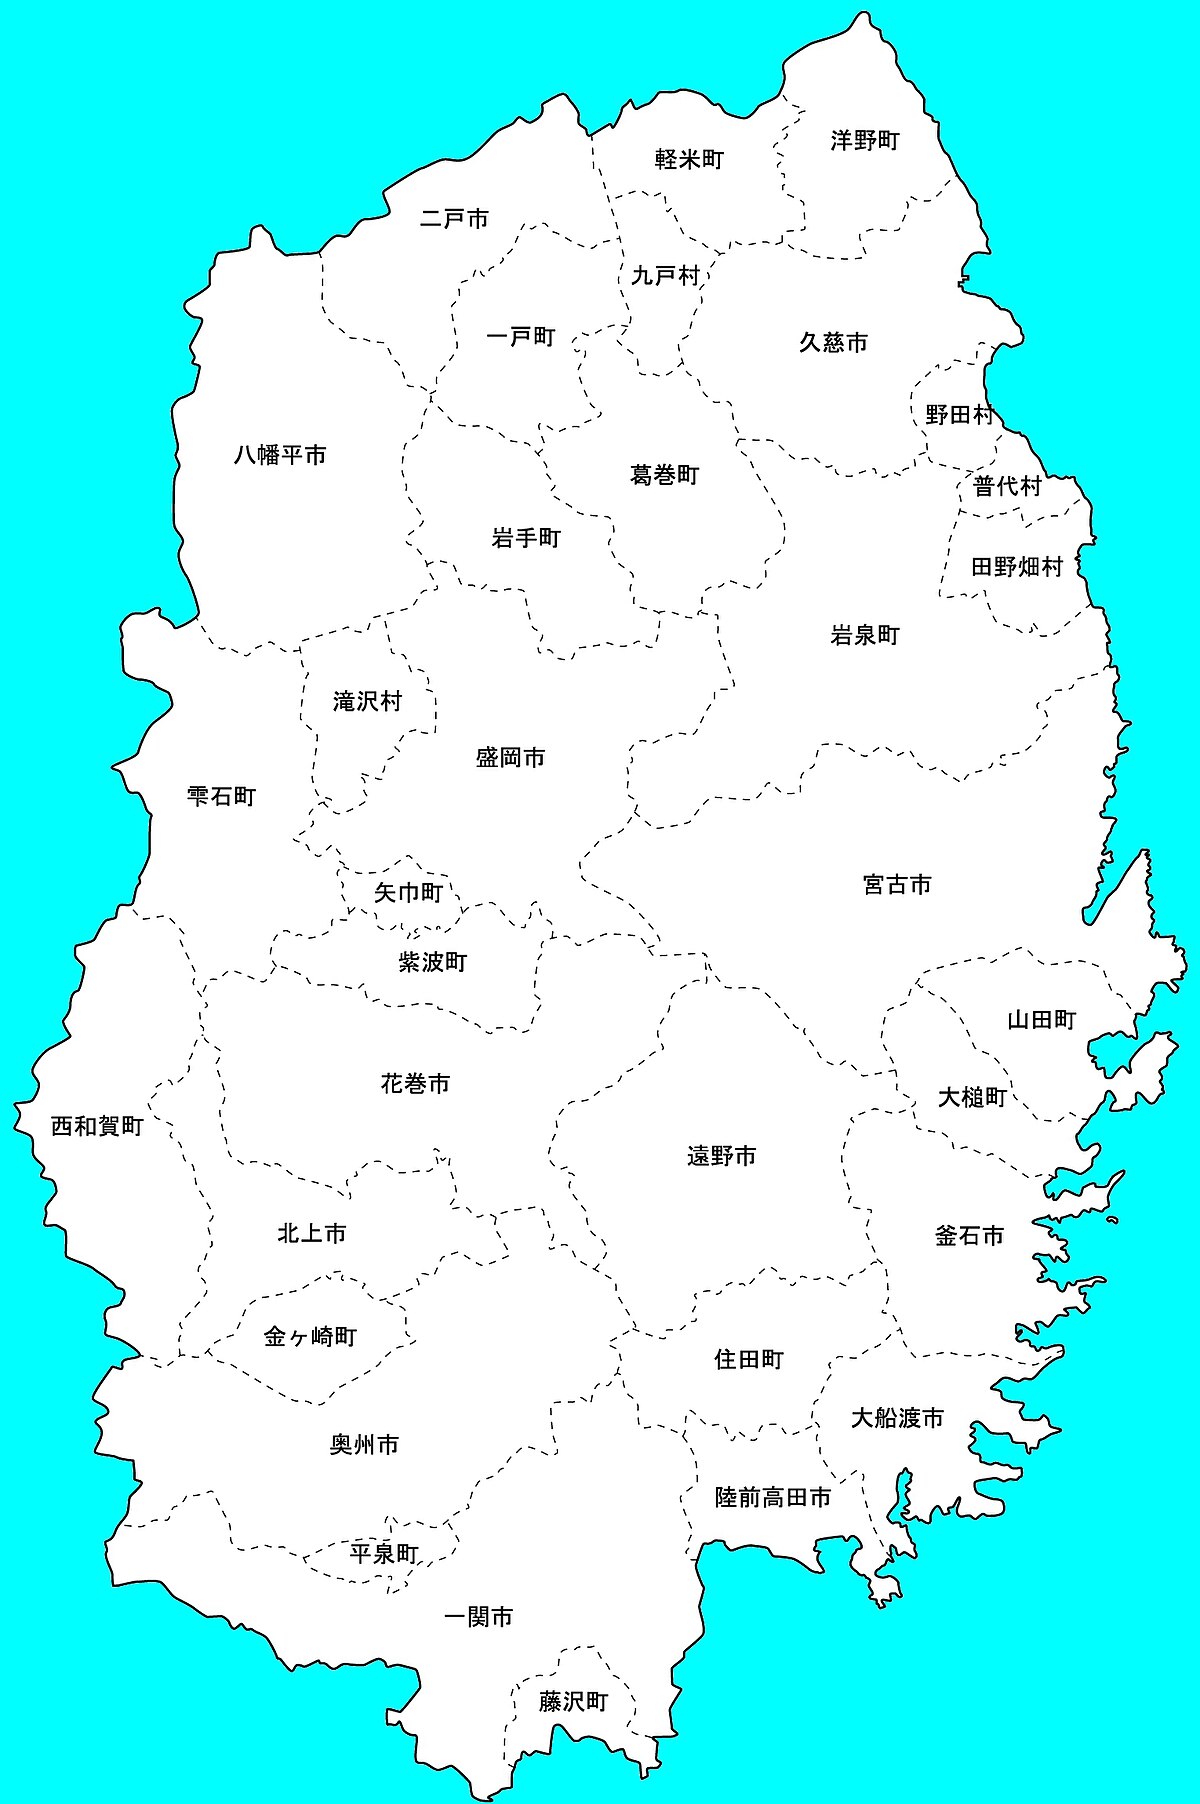 ファイル 岩手県 地方行政区分 地図 Jpg Wikipedia